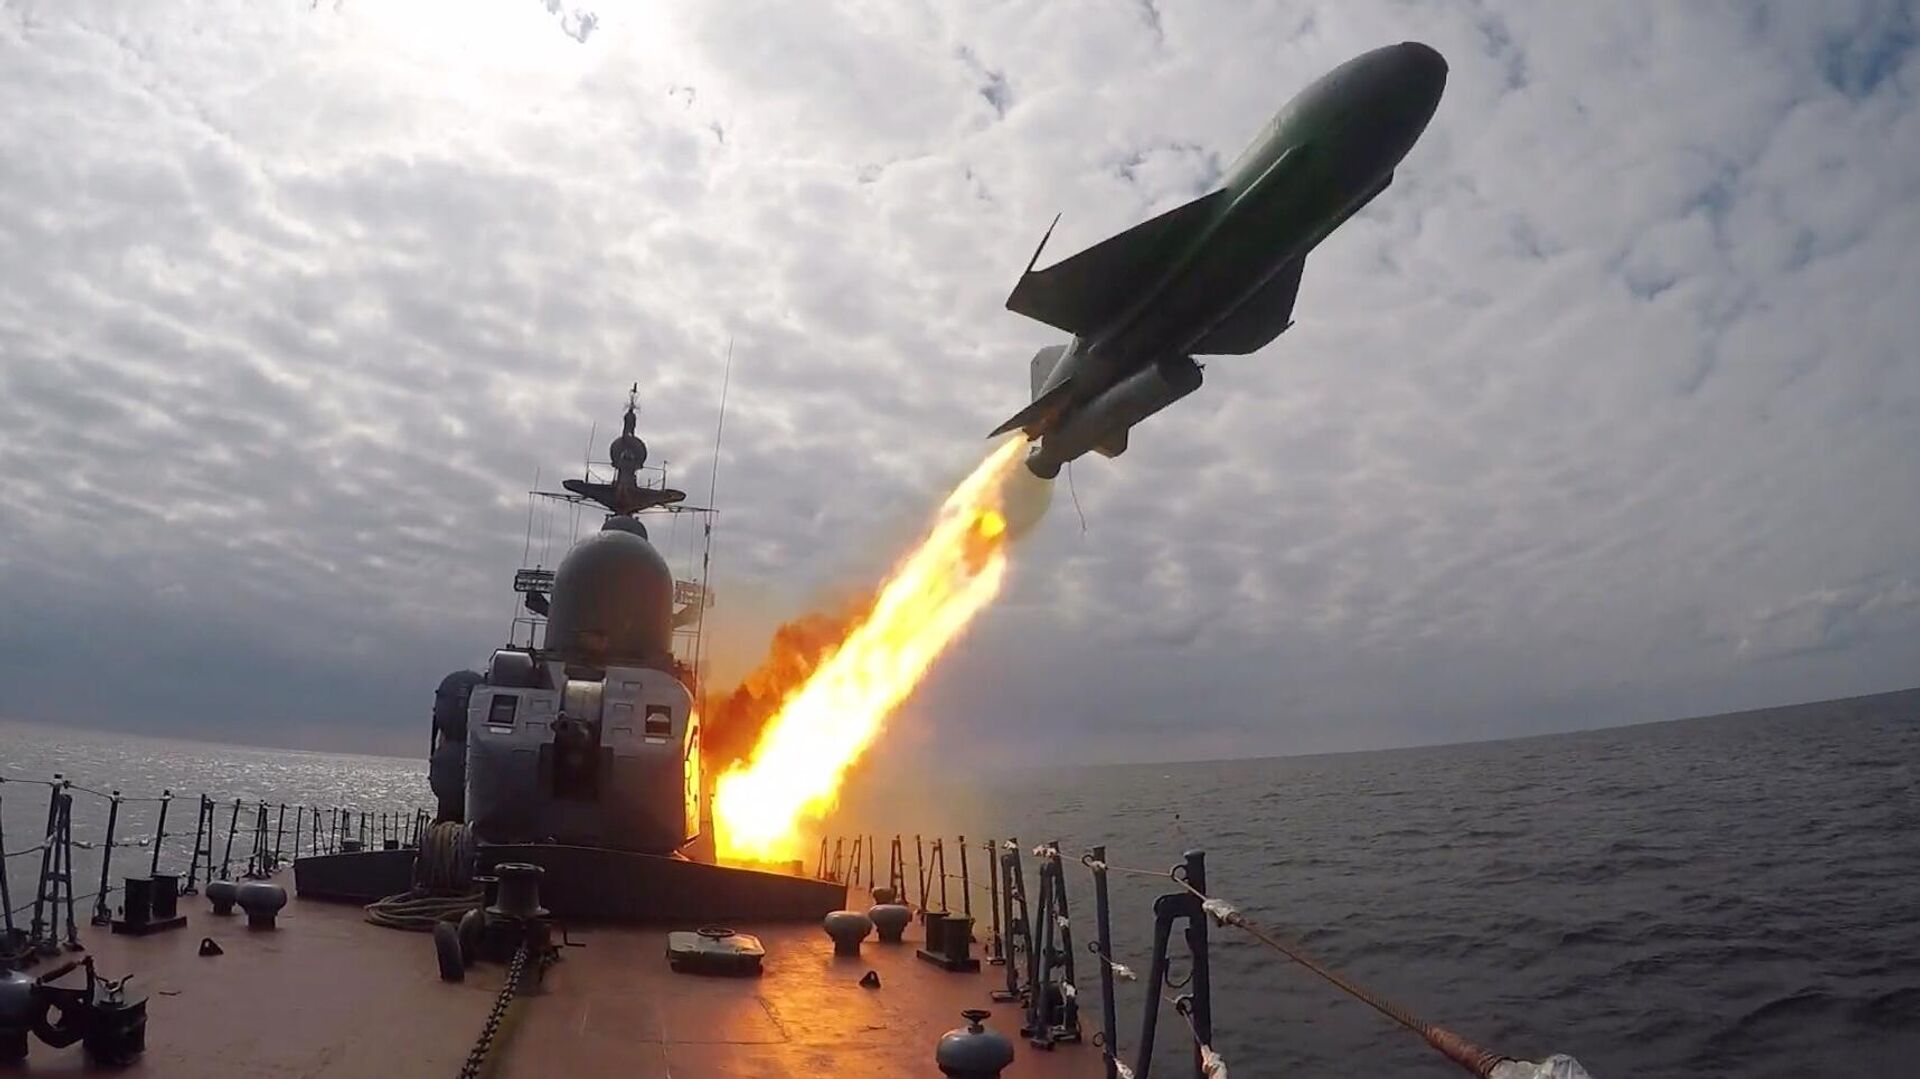 الدفاع الروسية تعلن تدمير 3 زوارق أوكرانية أمريكية الصنع في البحر الأسود